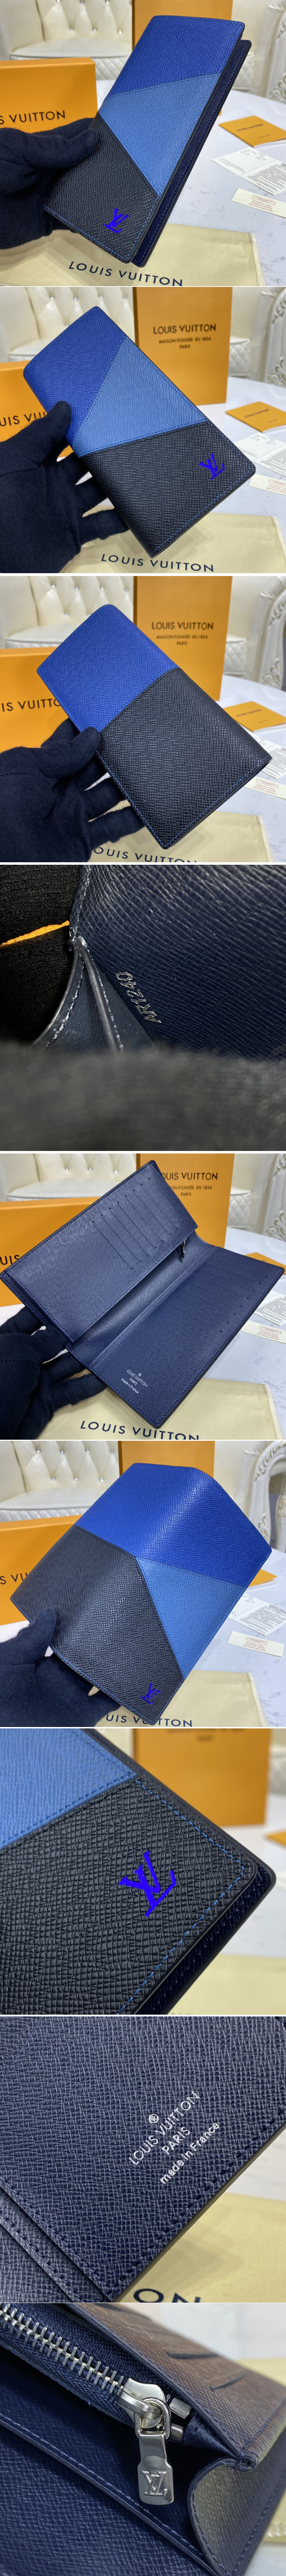 Replica Louis Vuitton M30713 LV Brazza wallet in Blue monochrome Taiga leather